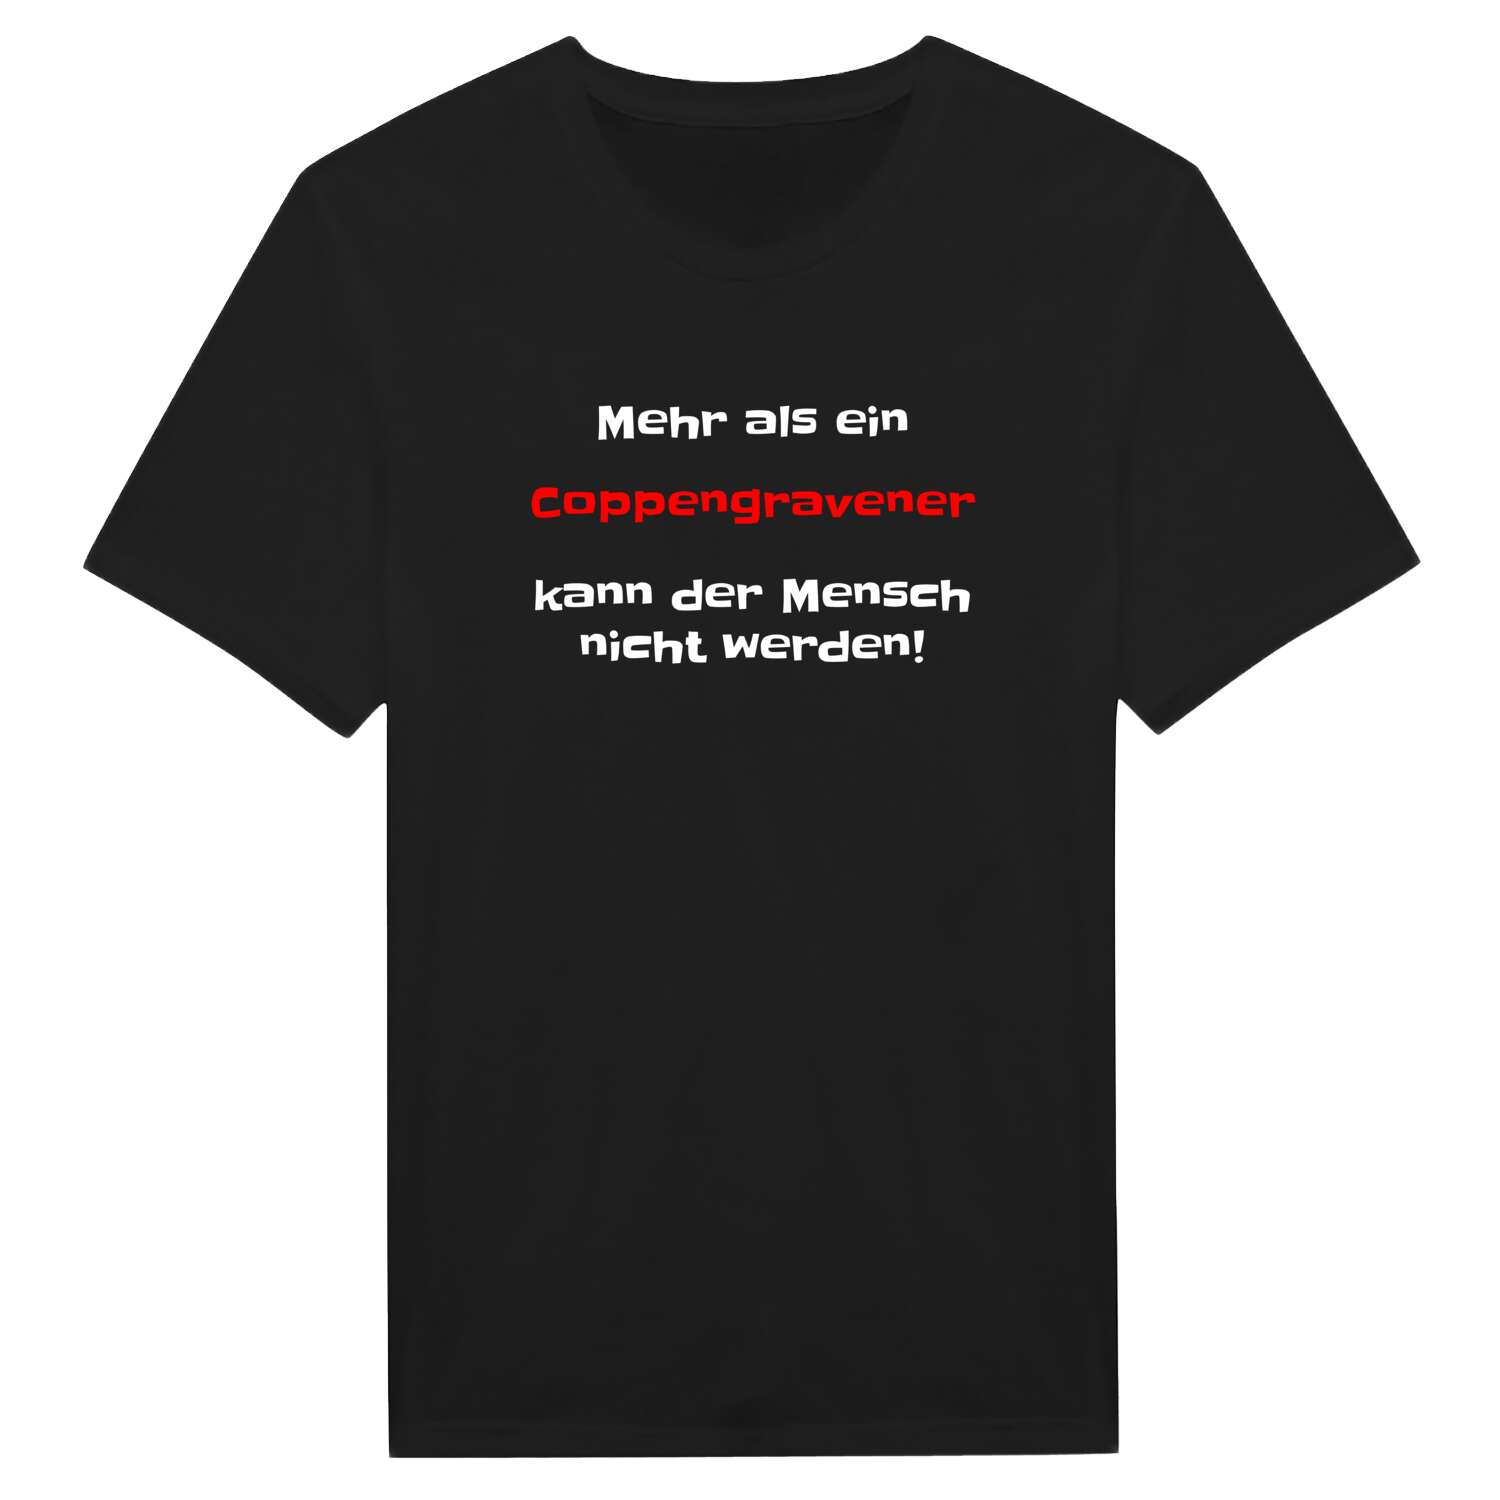 Coppengrave T-Shirt »Mehr als ein«